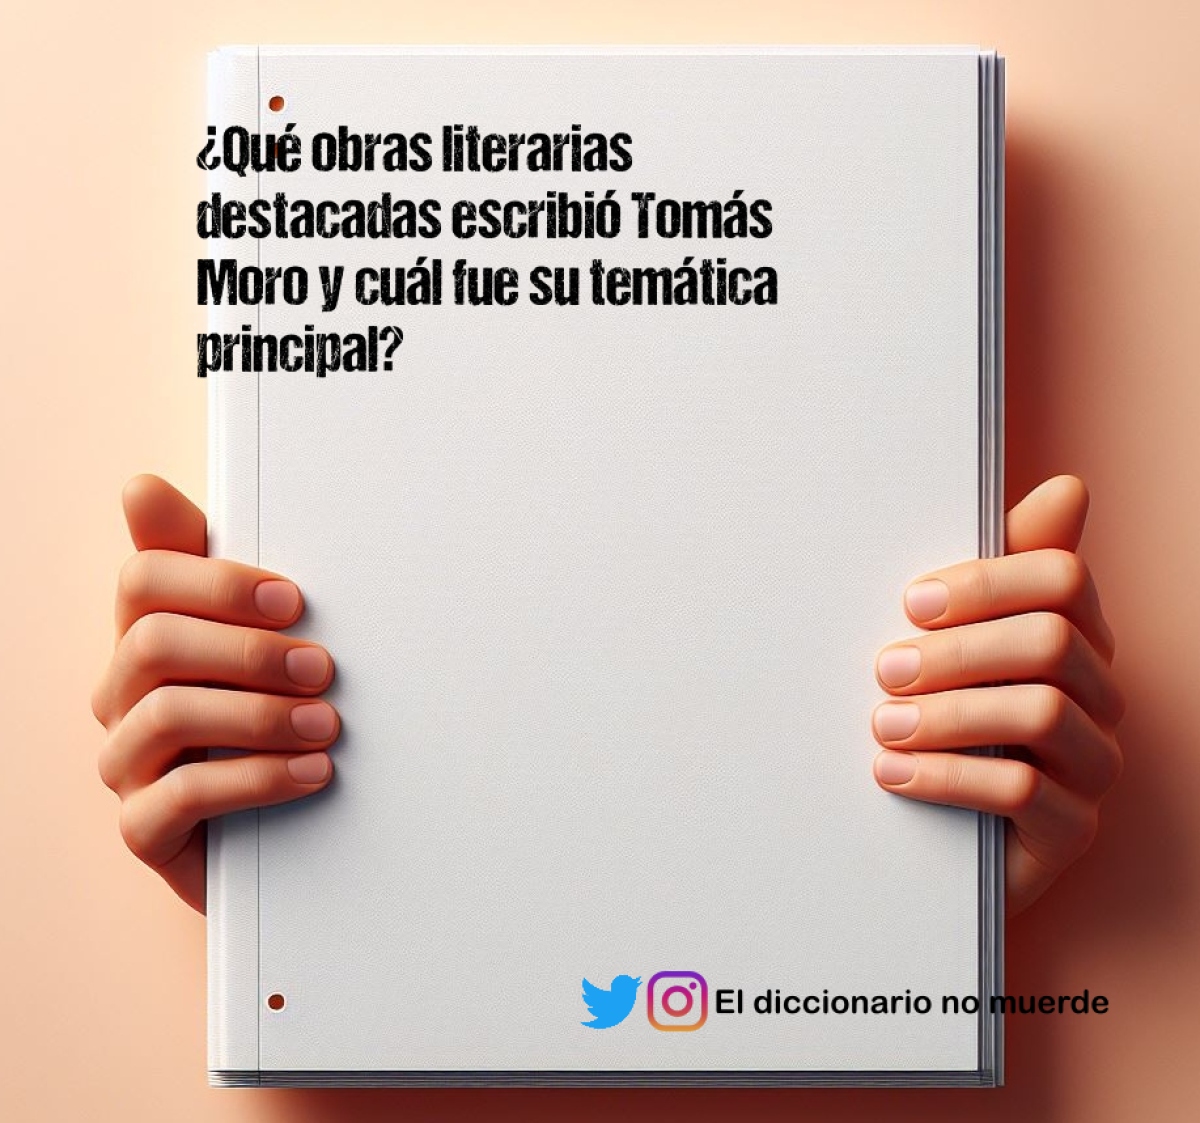 ¿Qué obras literarias destacadas escribió Tomás Moro y cuál fue su temática principal?